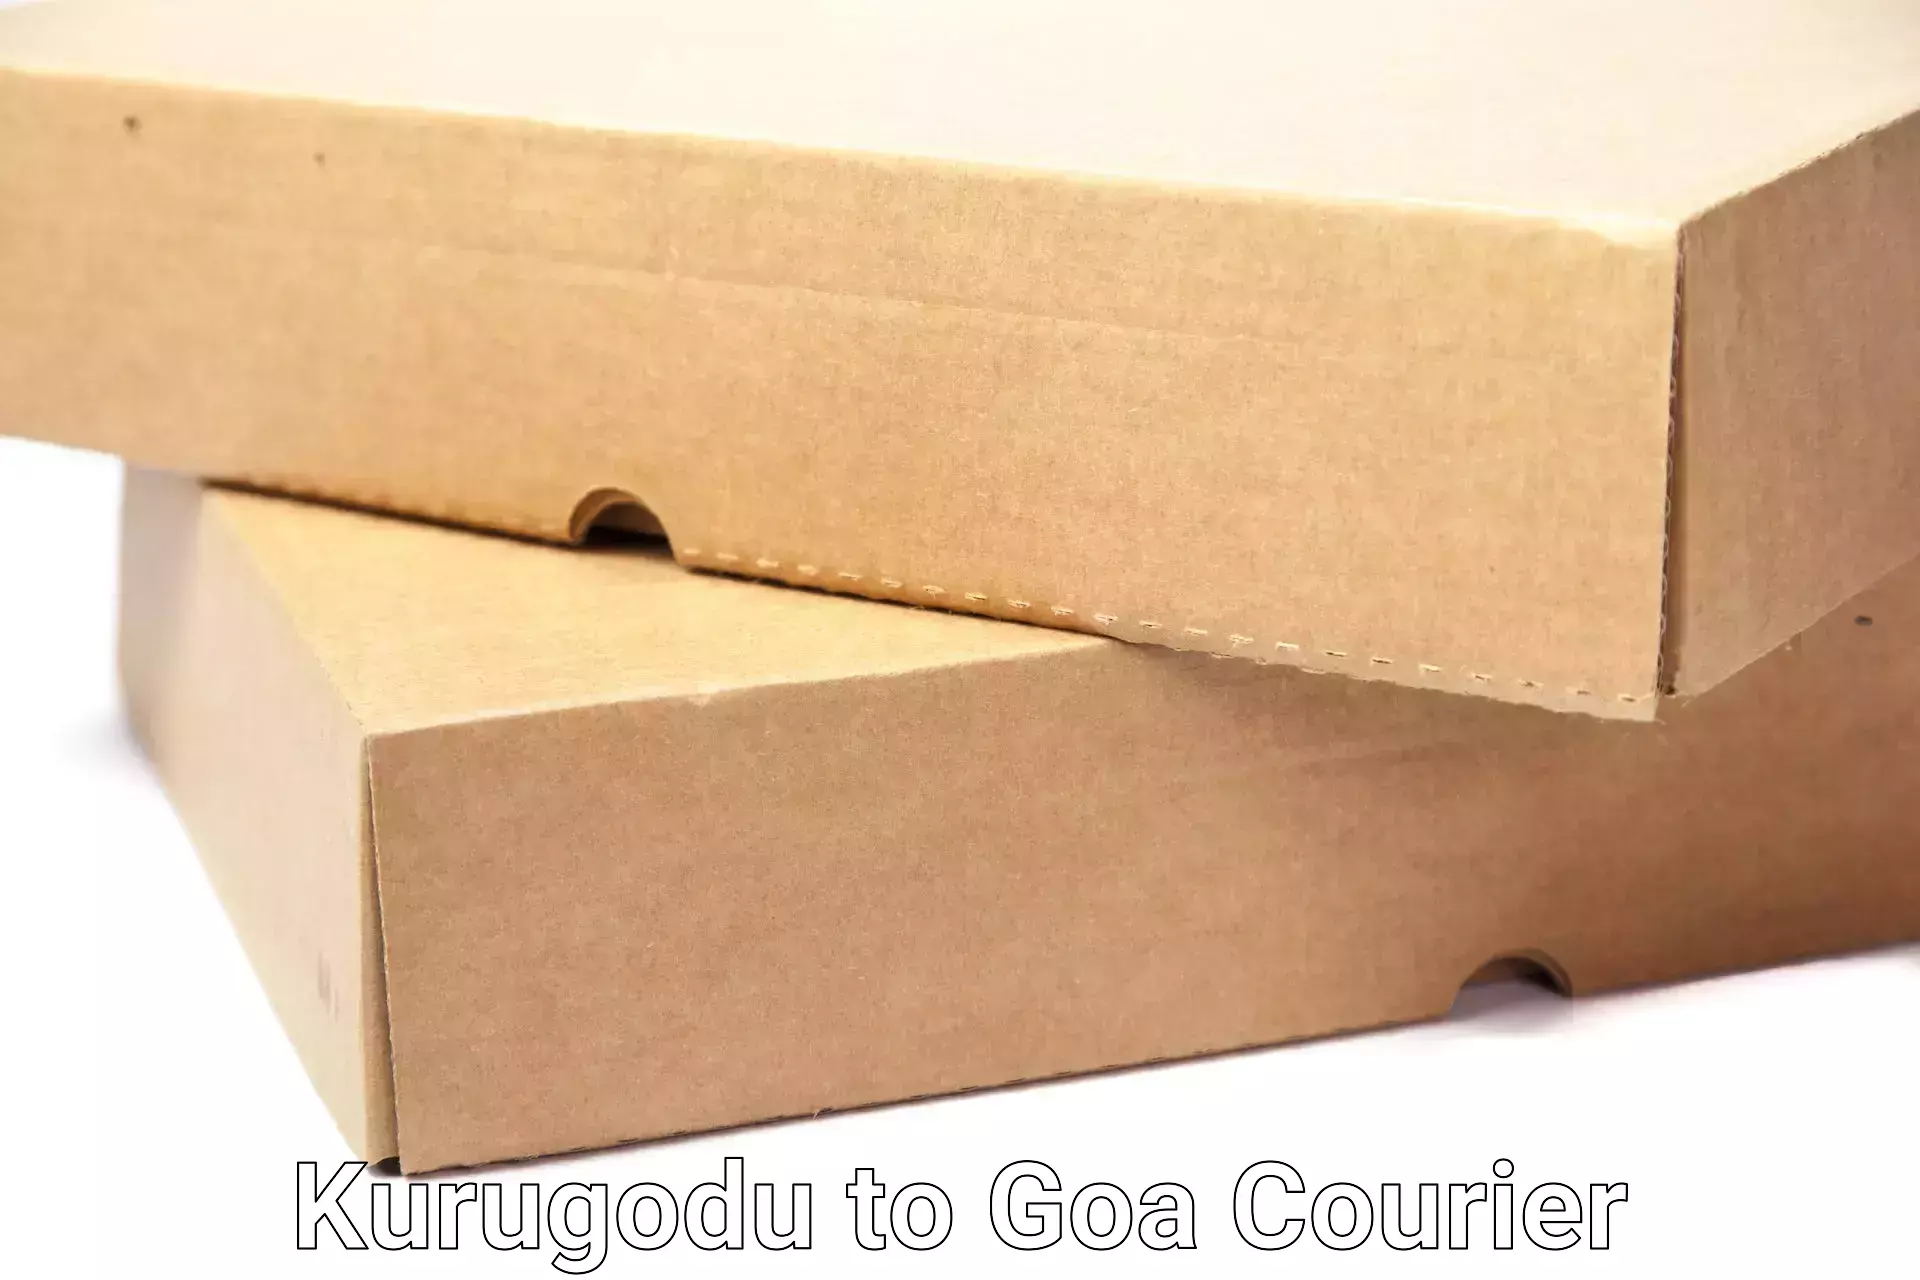 Stress-free moving Kurugodu to Goa